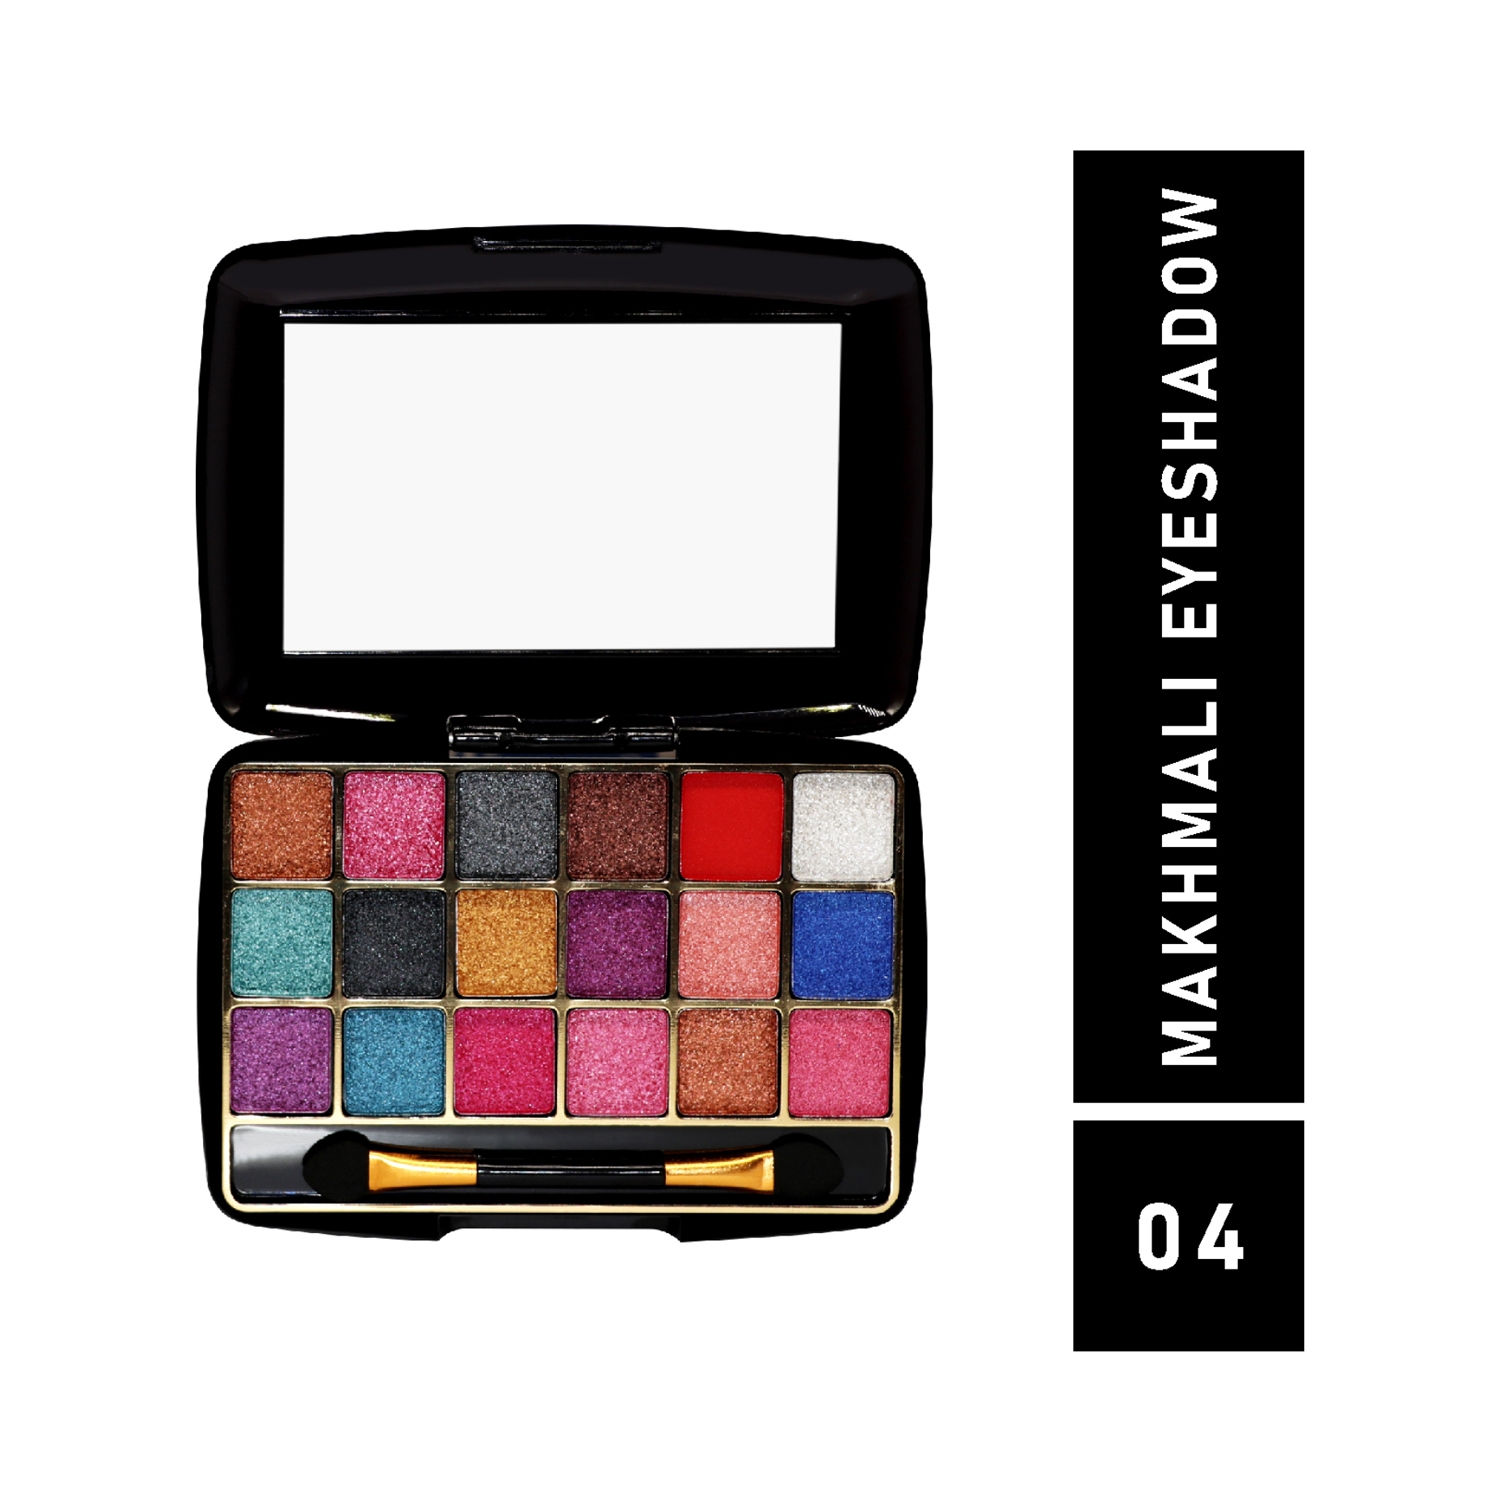 Half N Half | Half N Half 18 Colors Makhmali Eyeshadow With Brush In Makeup Palette - 04 Shade (12.8g)